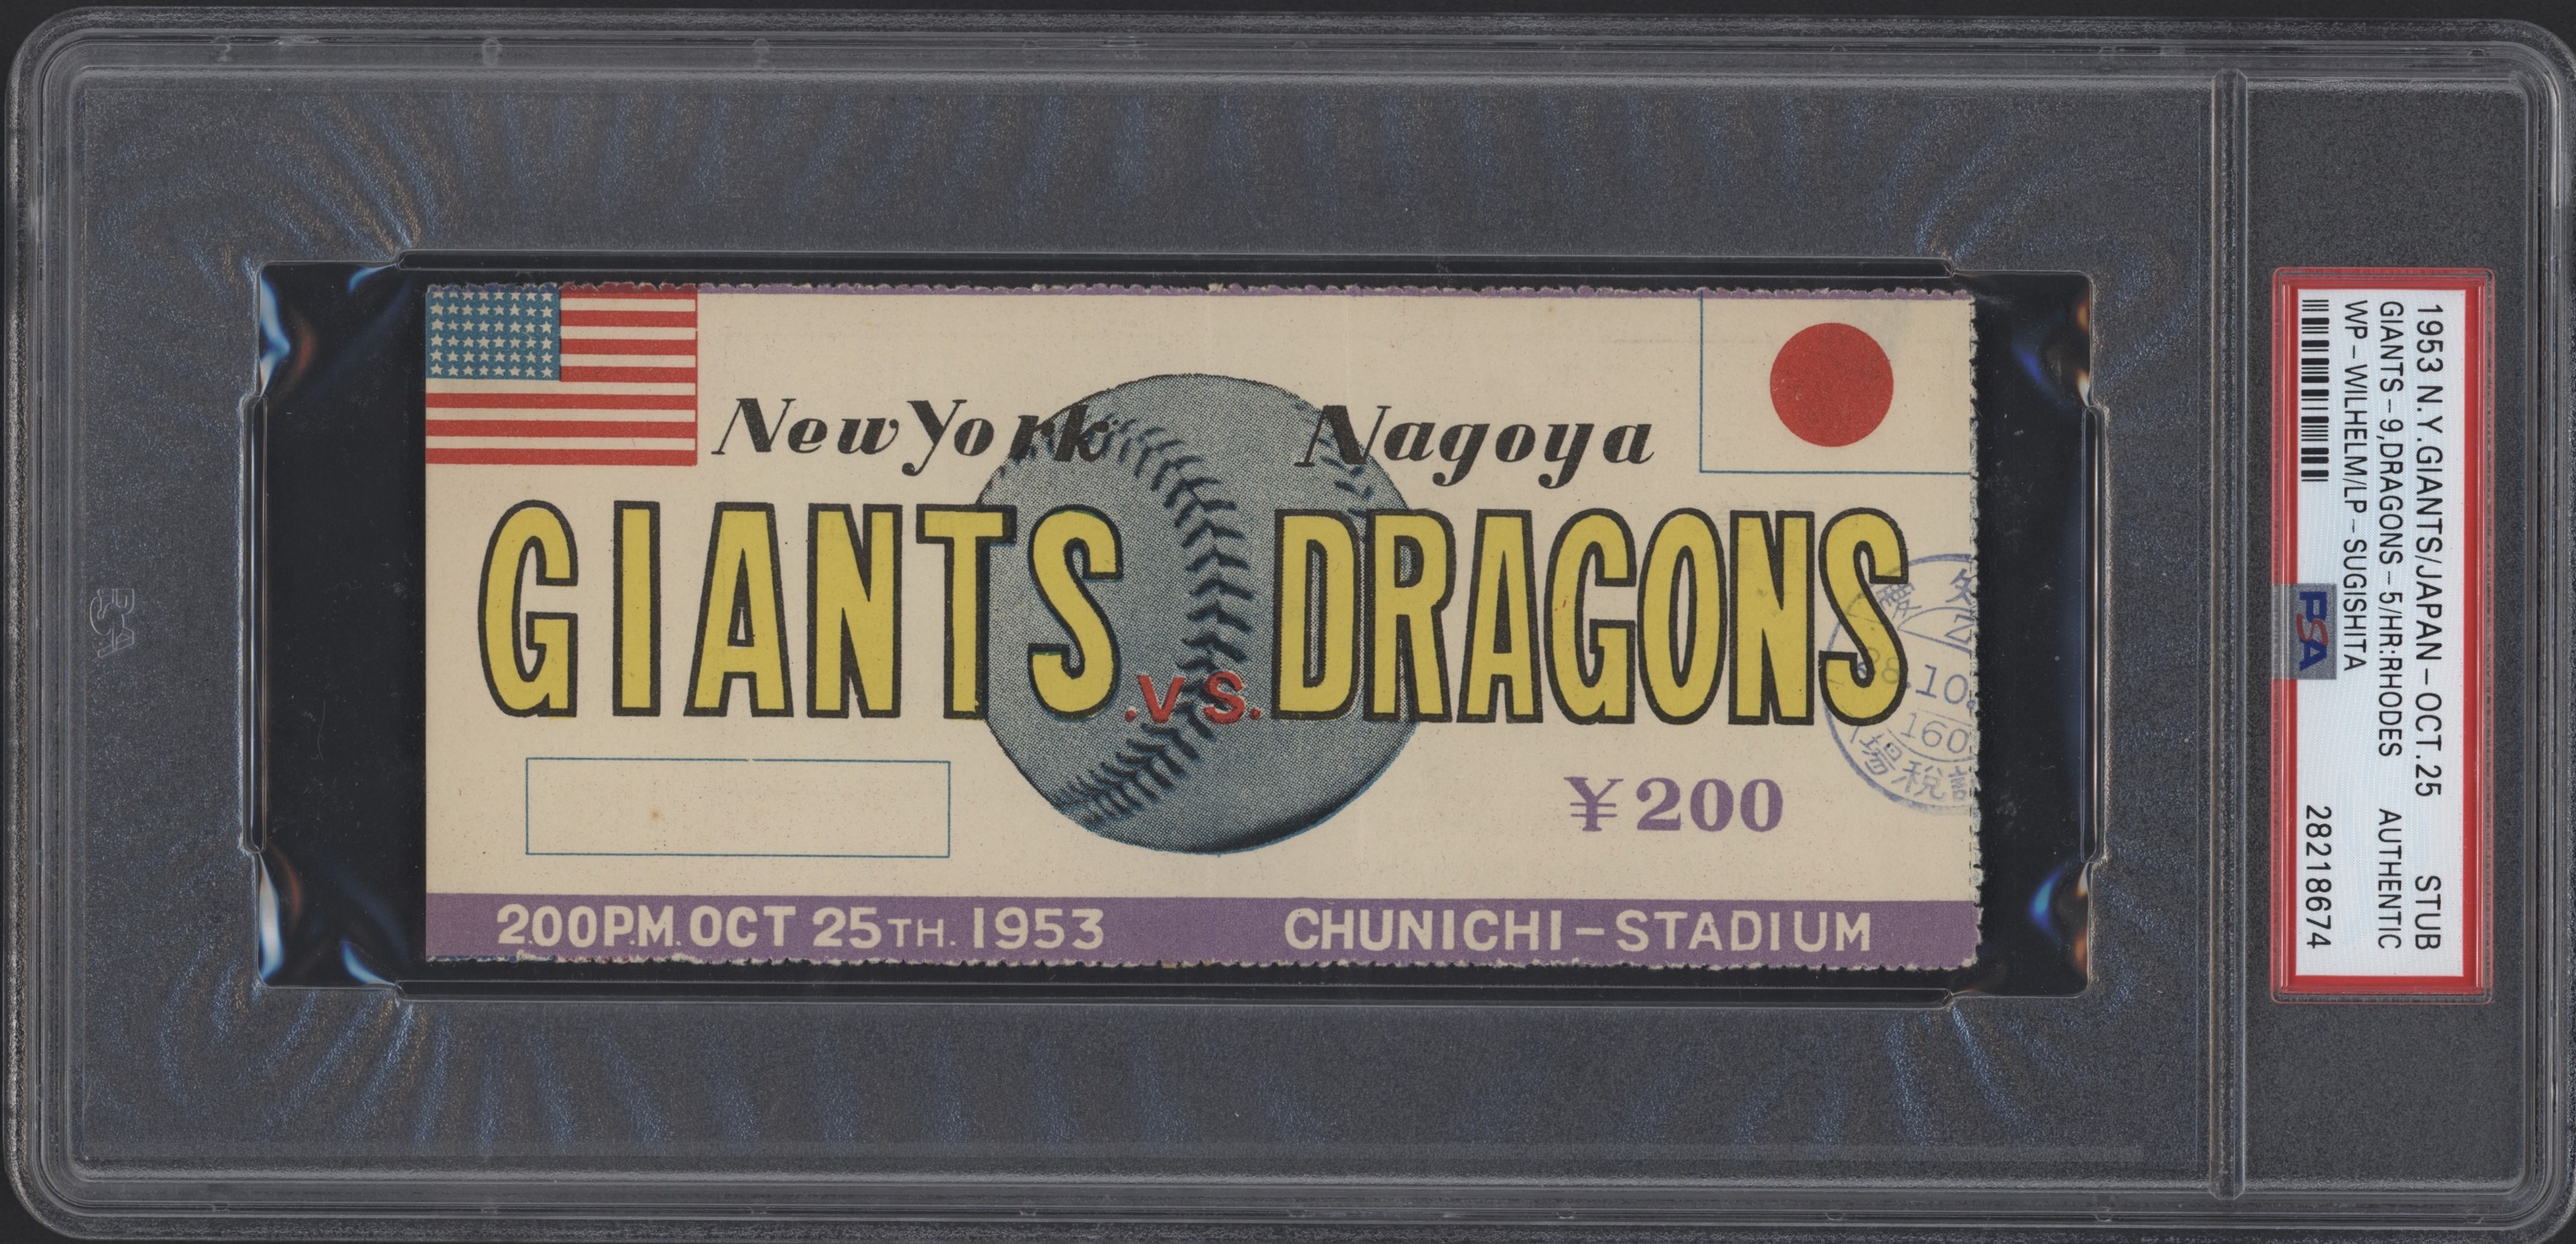 Baseball - 1953 New York Giants vs. Nagoya Dragons Ticket Stub